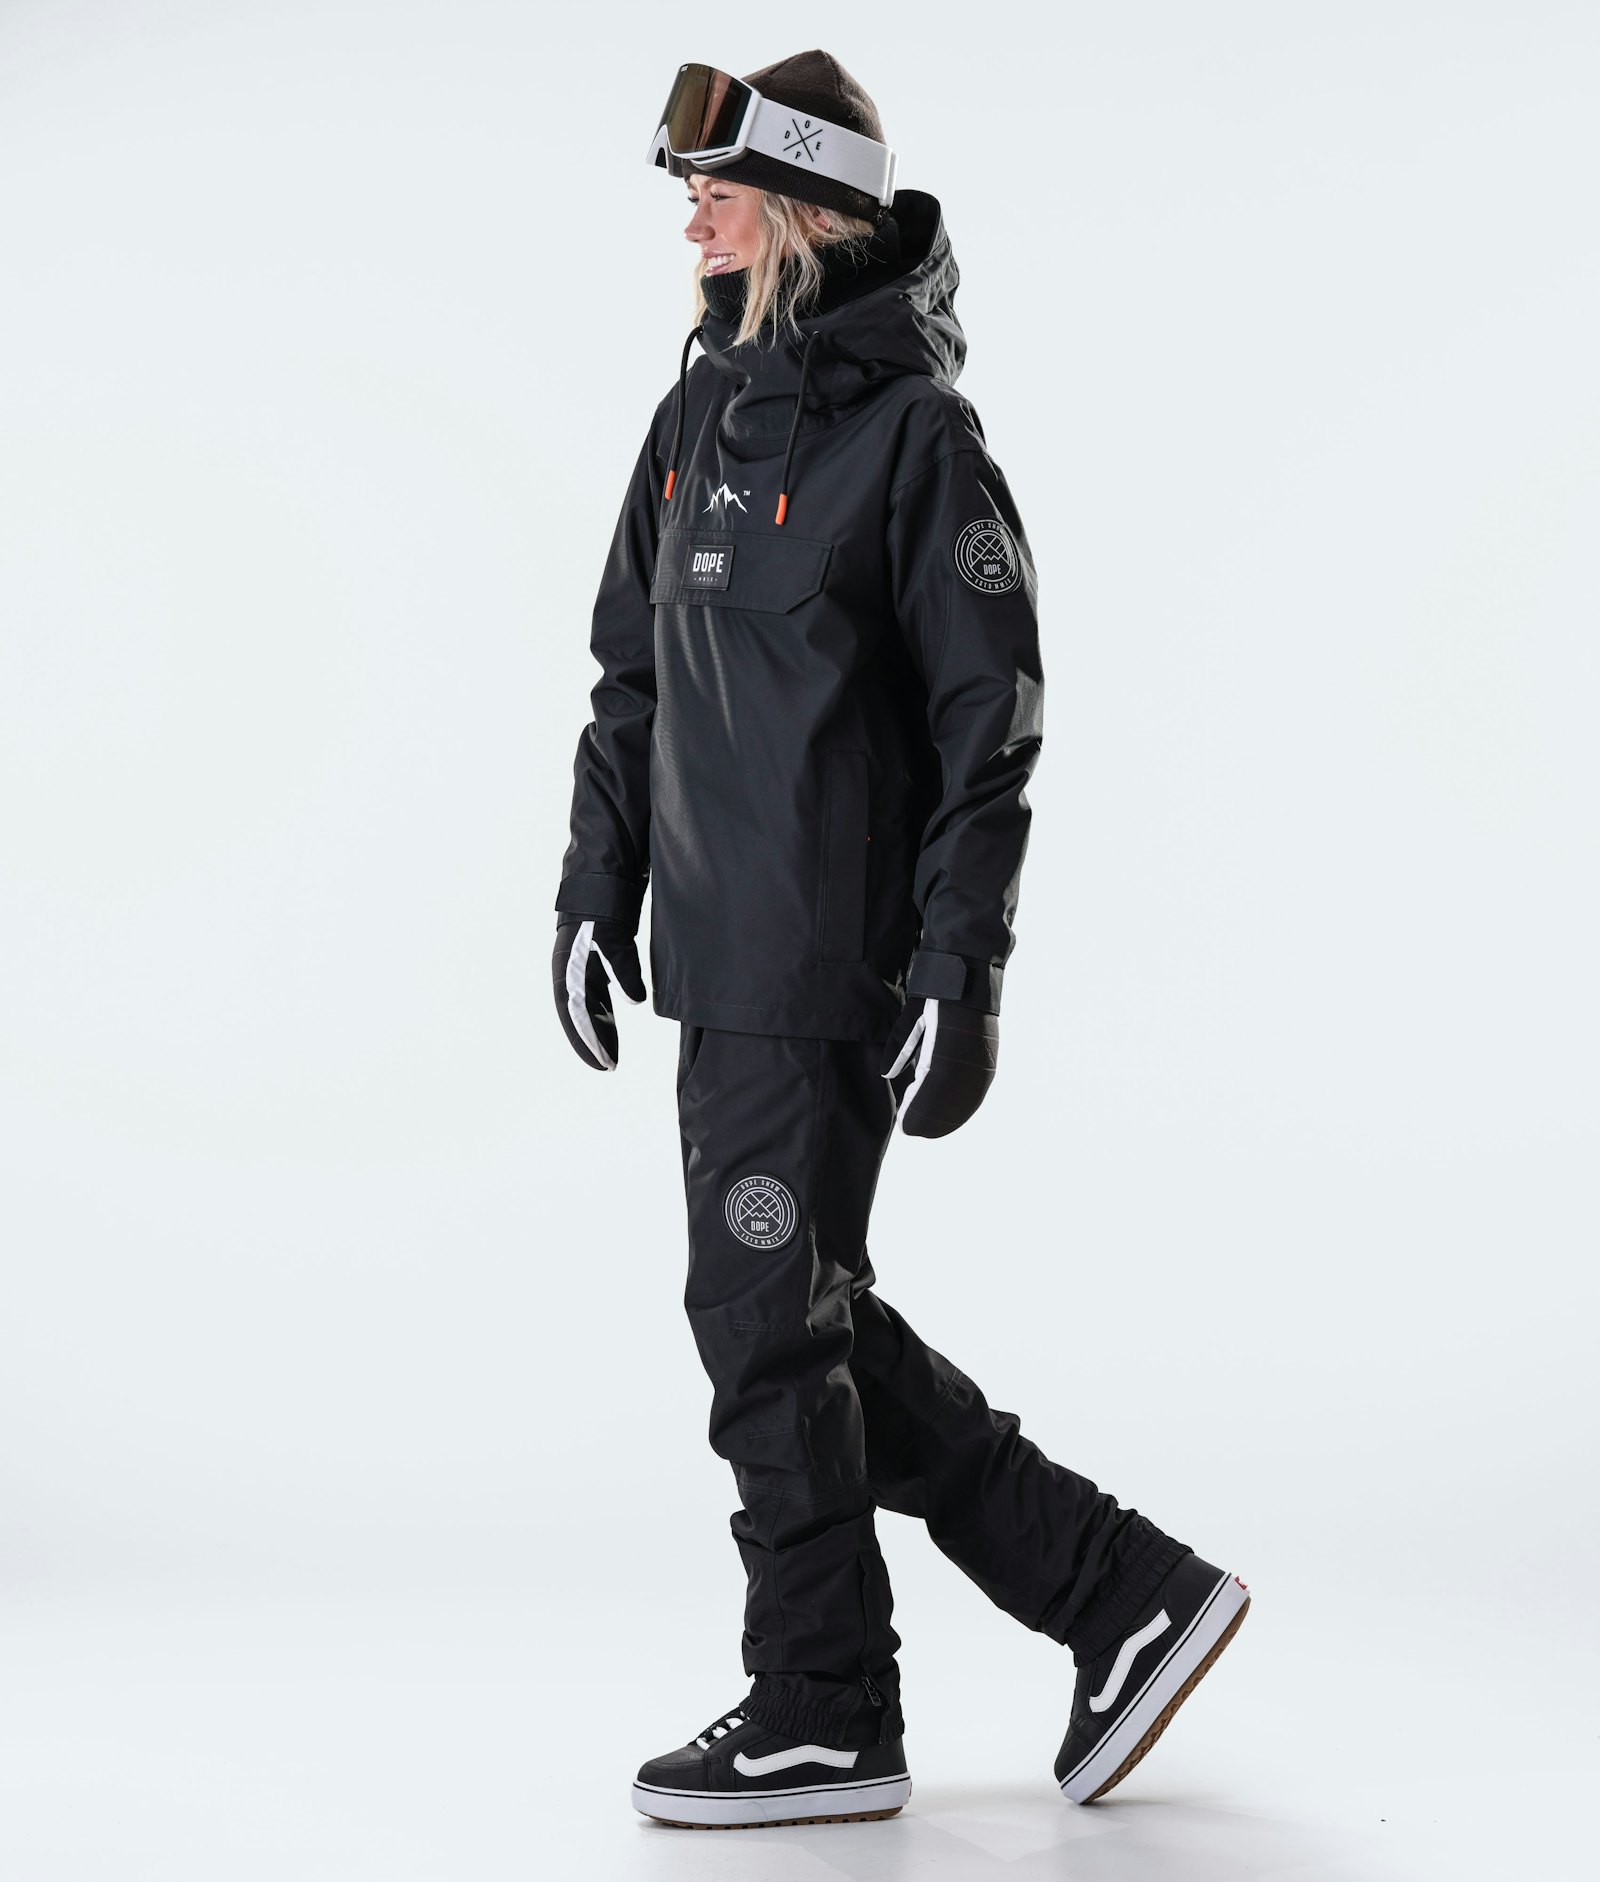 Blizzard W 2020 Snowboard Jacket Women Black